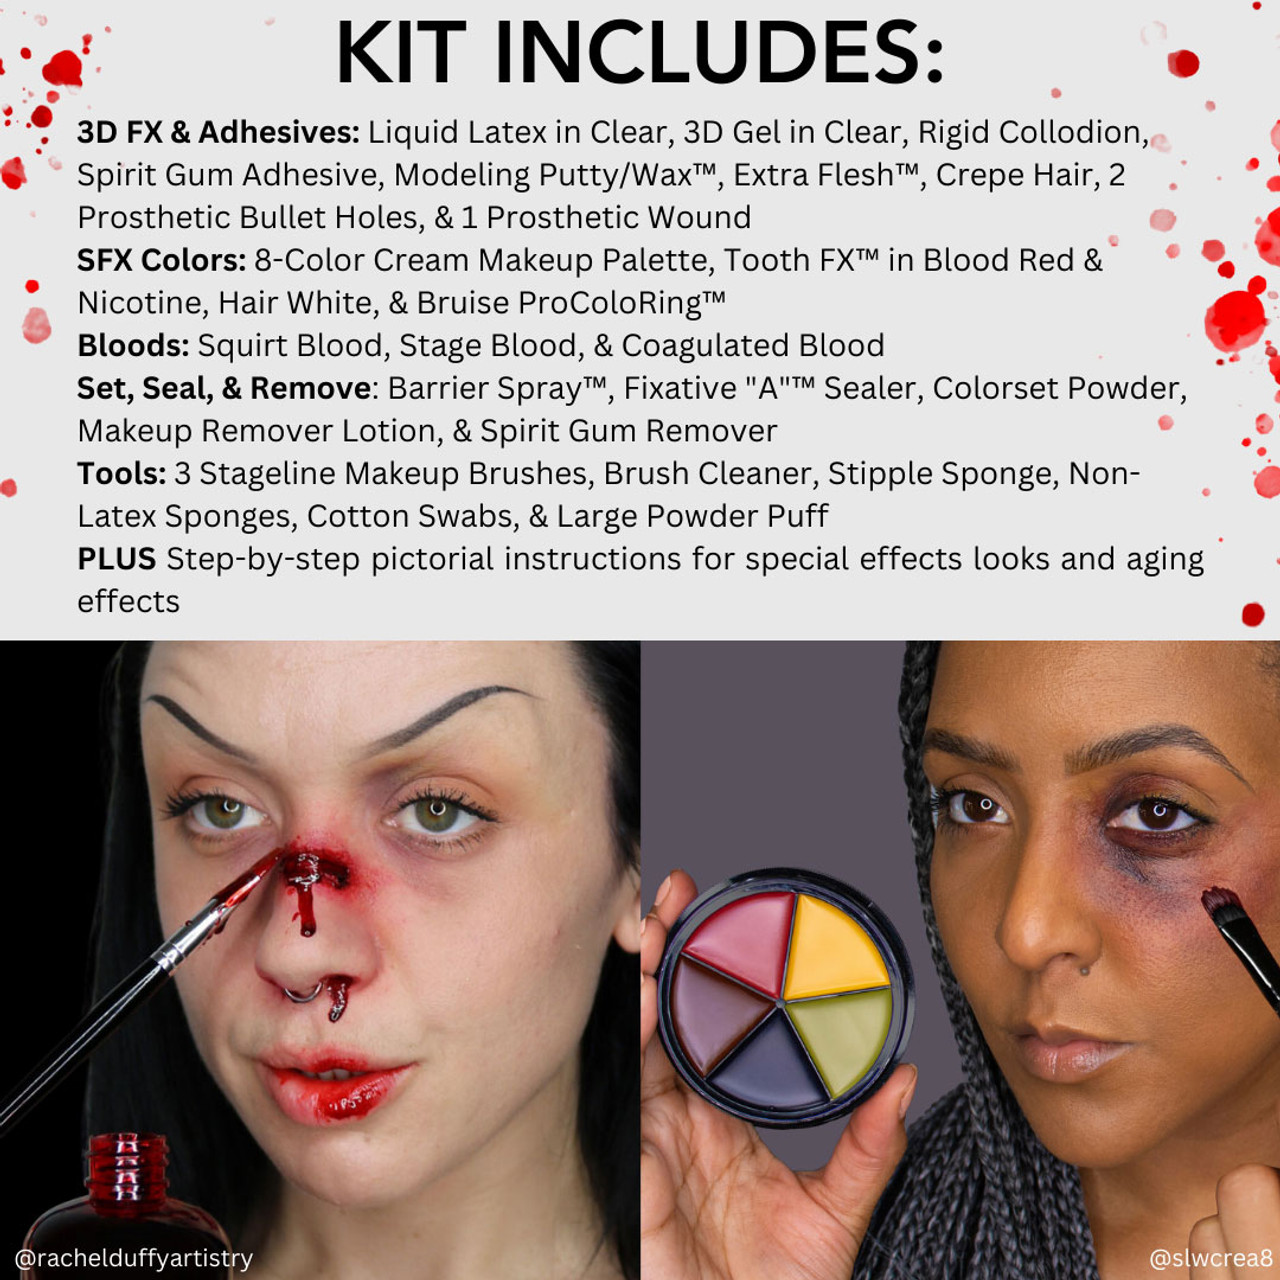 Mehron Face Painting Premium Makeup Kit